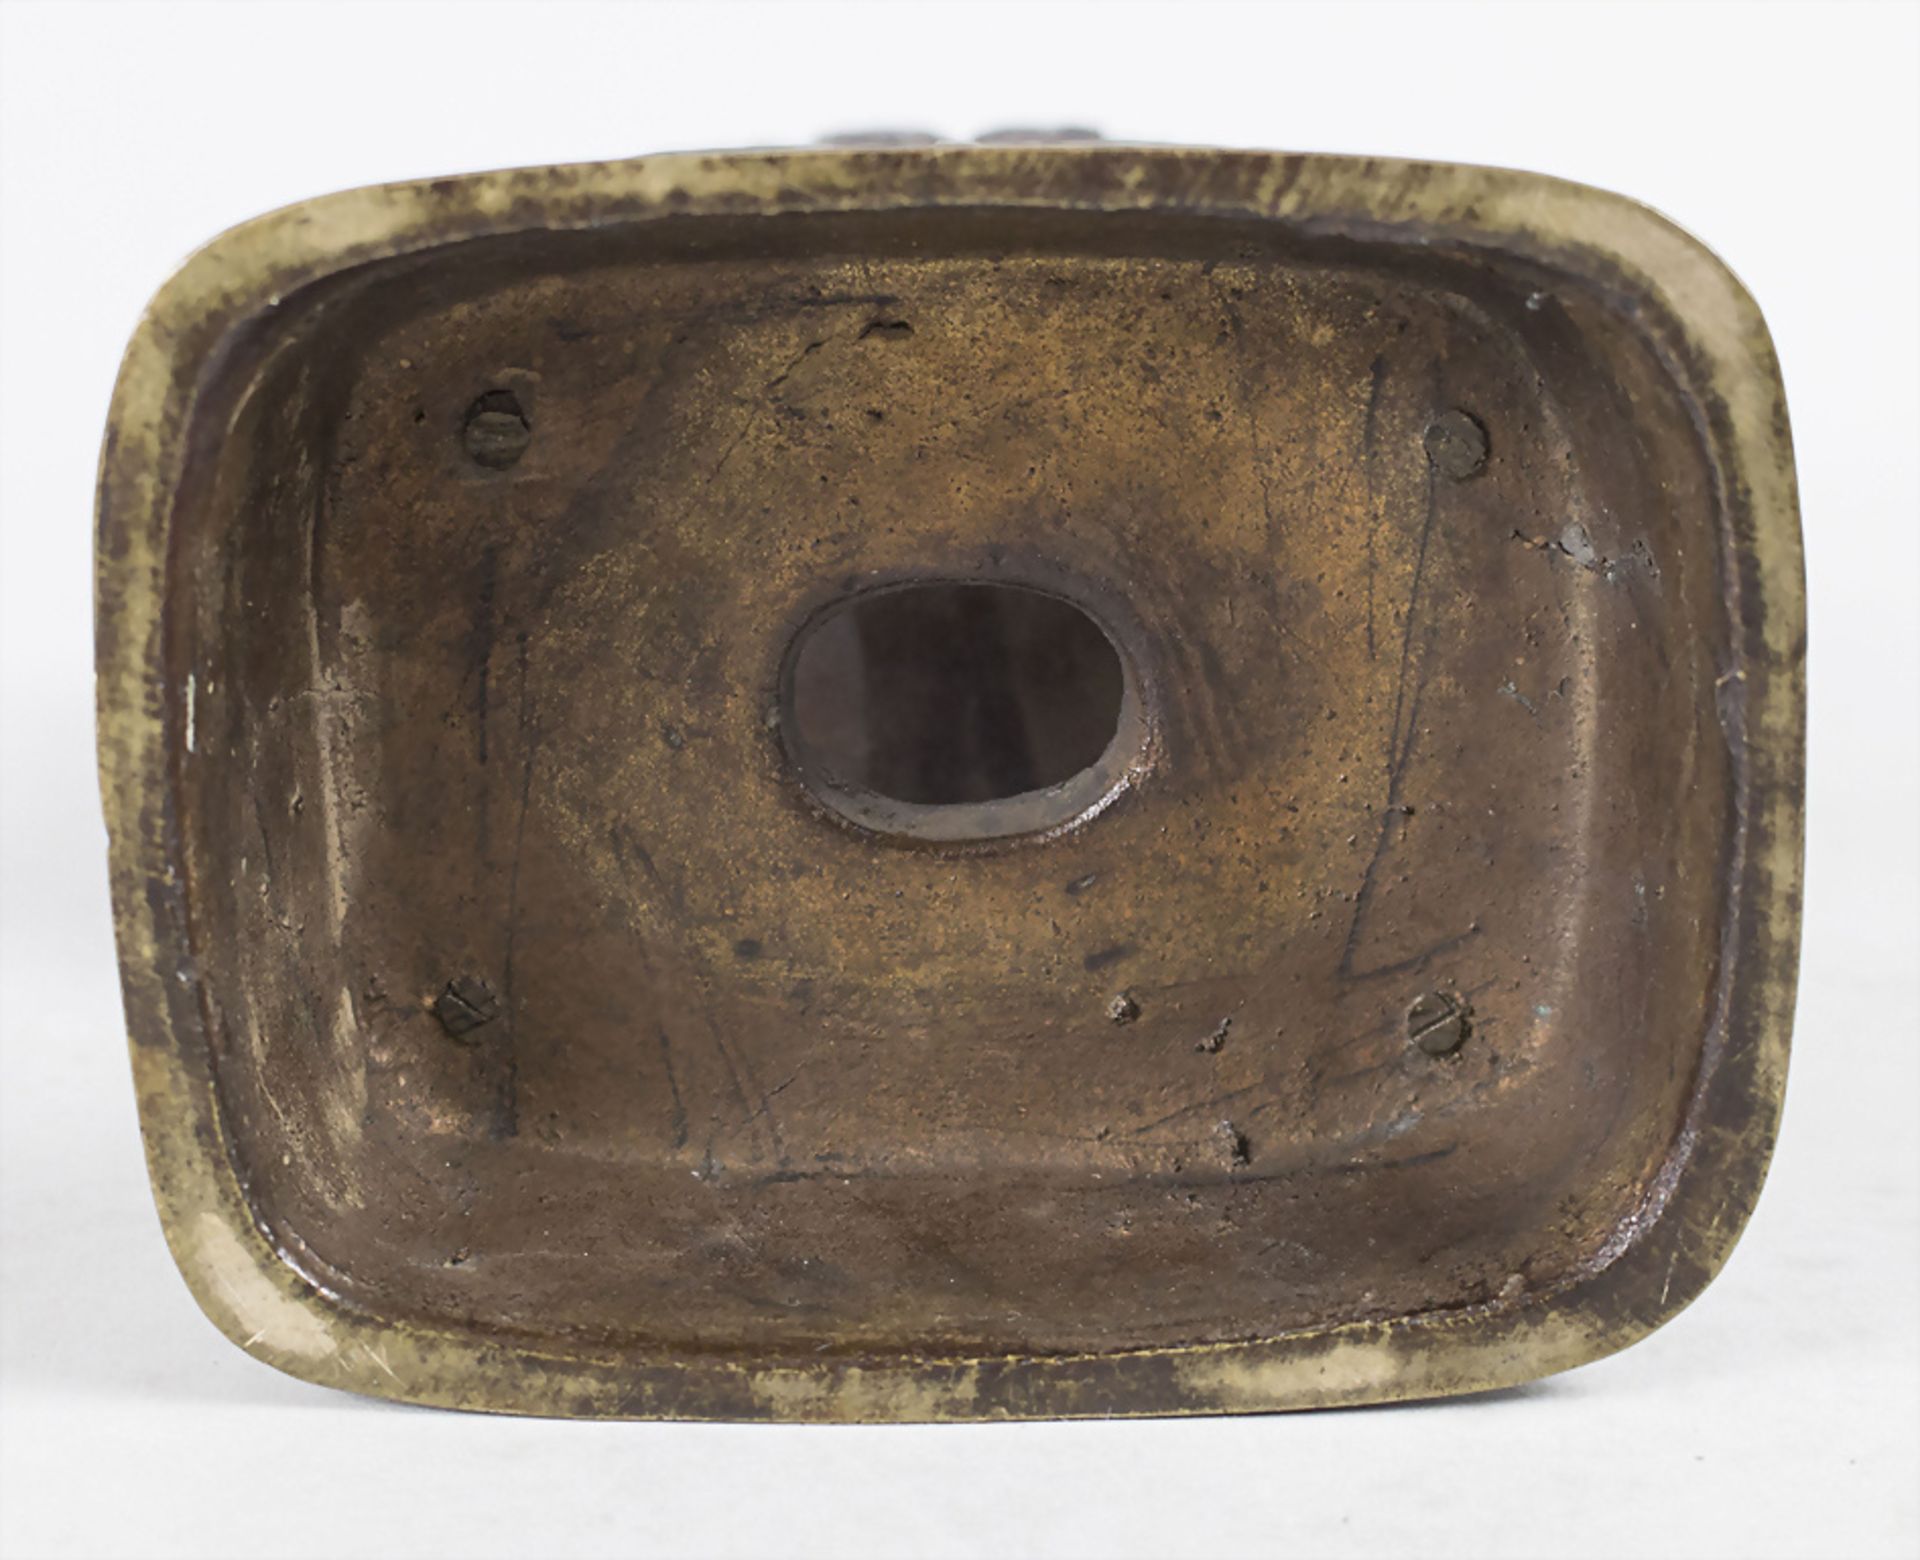 Kleines Bronzegefäß / Weihrauchbrenner / bronze vessel / incense holder, China, um 1900 - Image 3 of 3